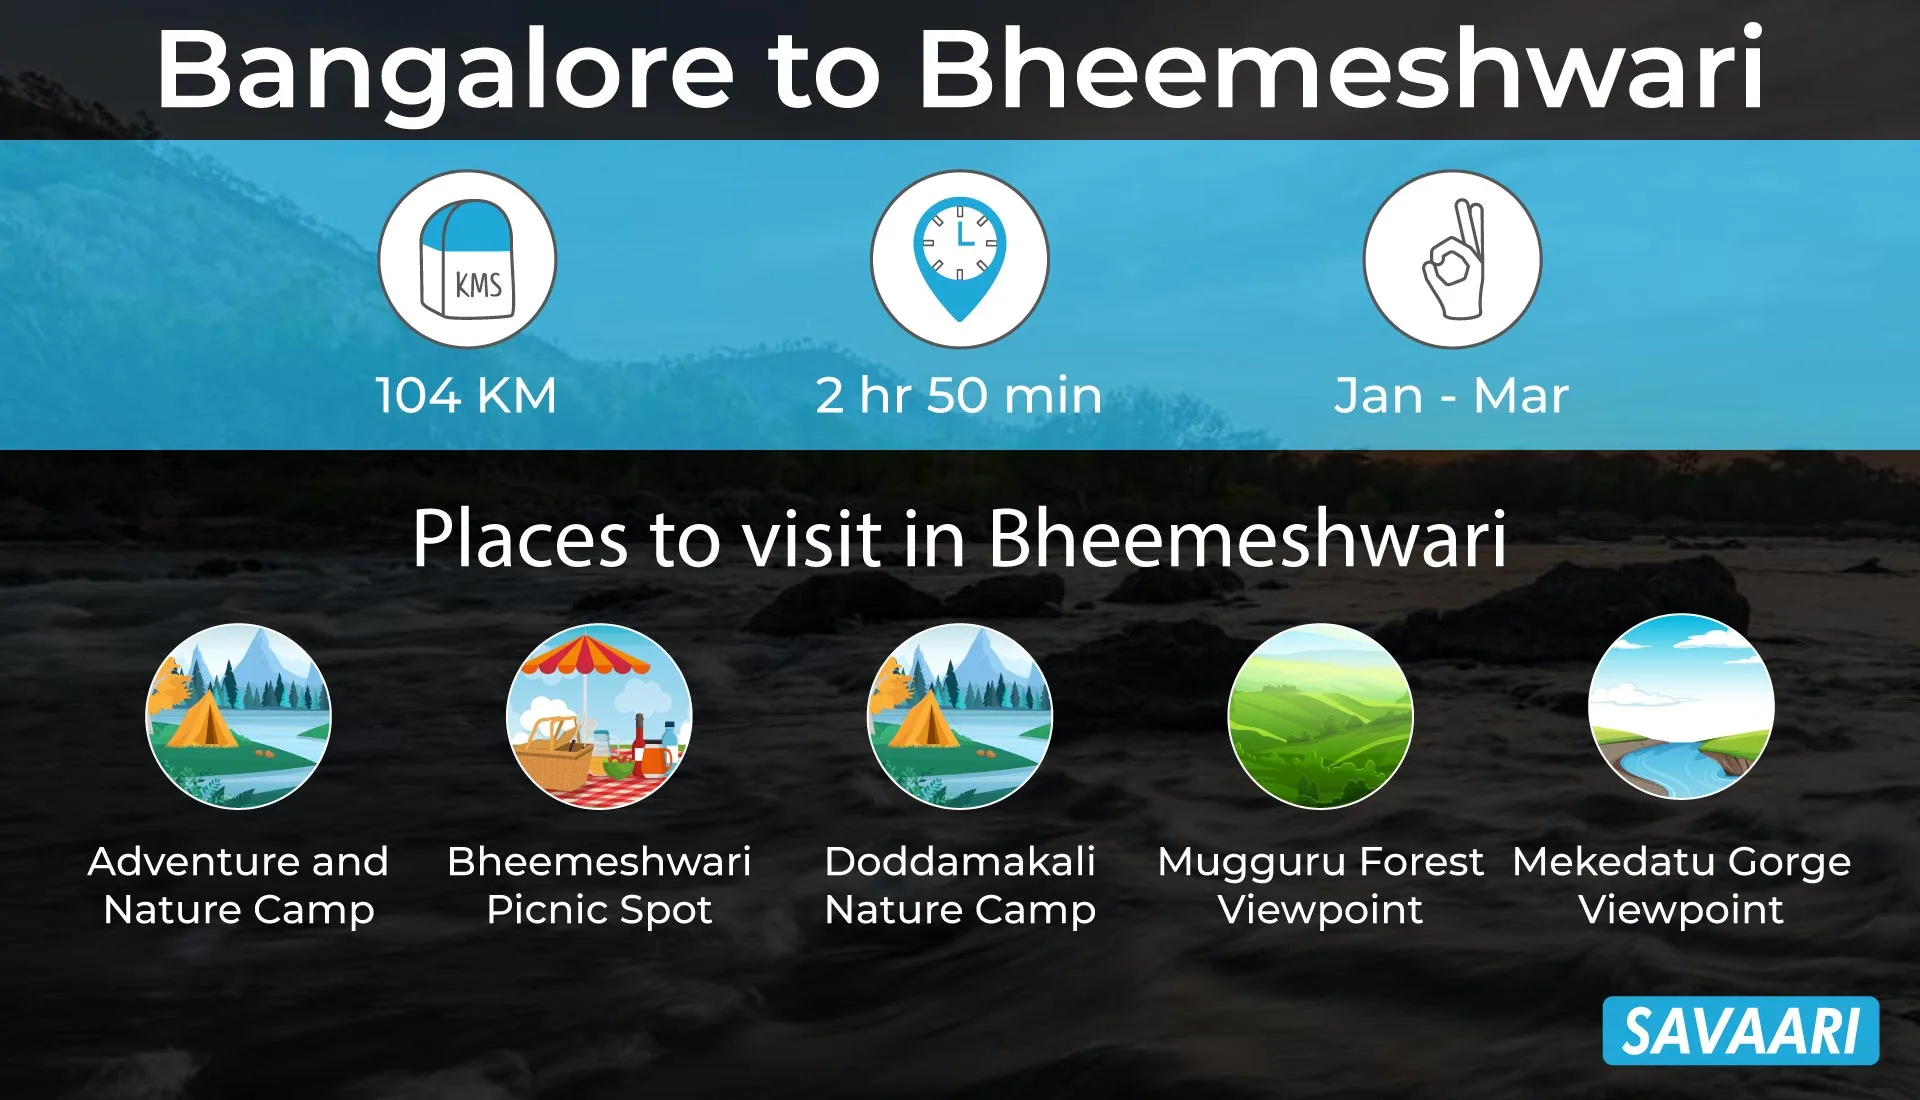 Bangalore to Bheemeshwari weekend getaway